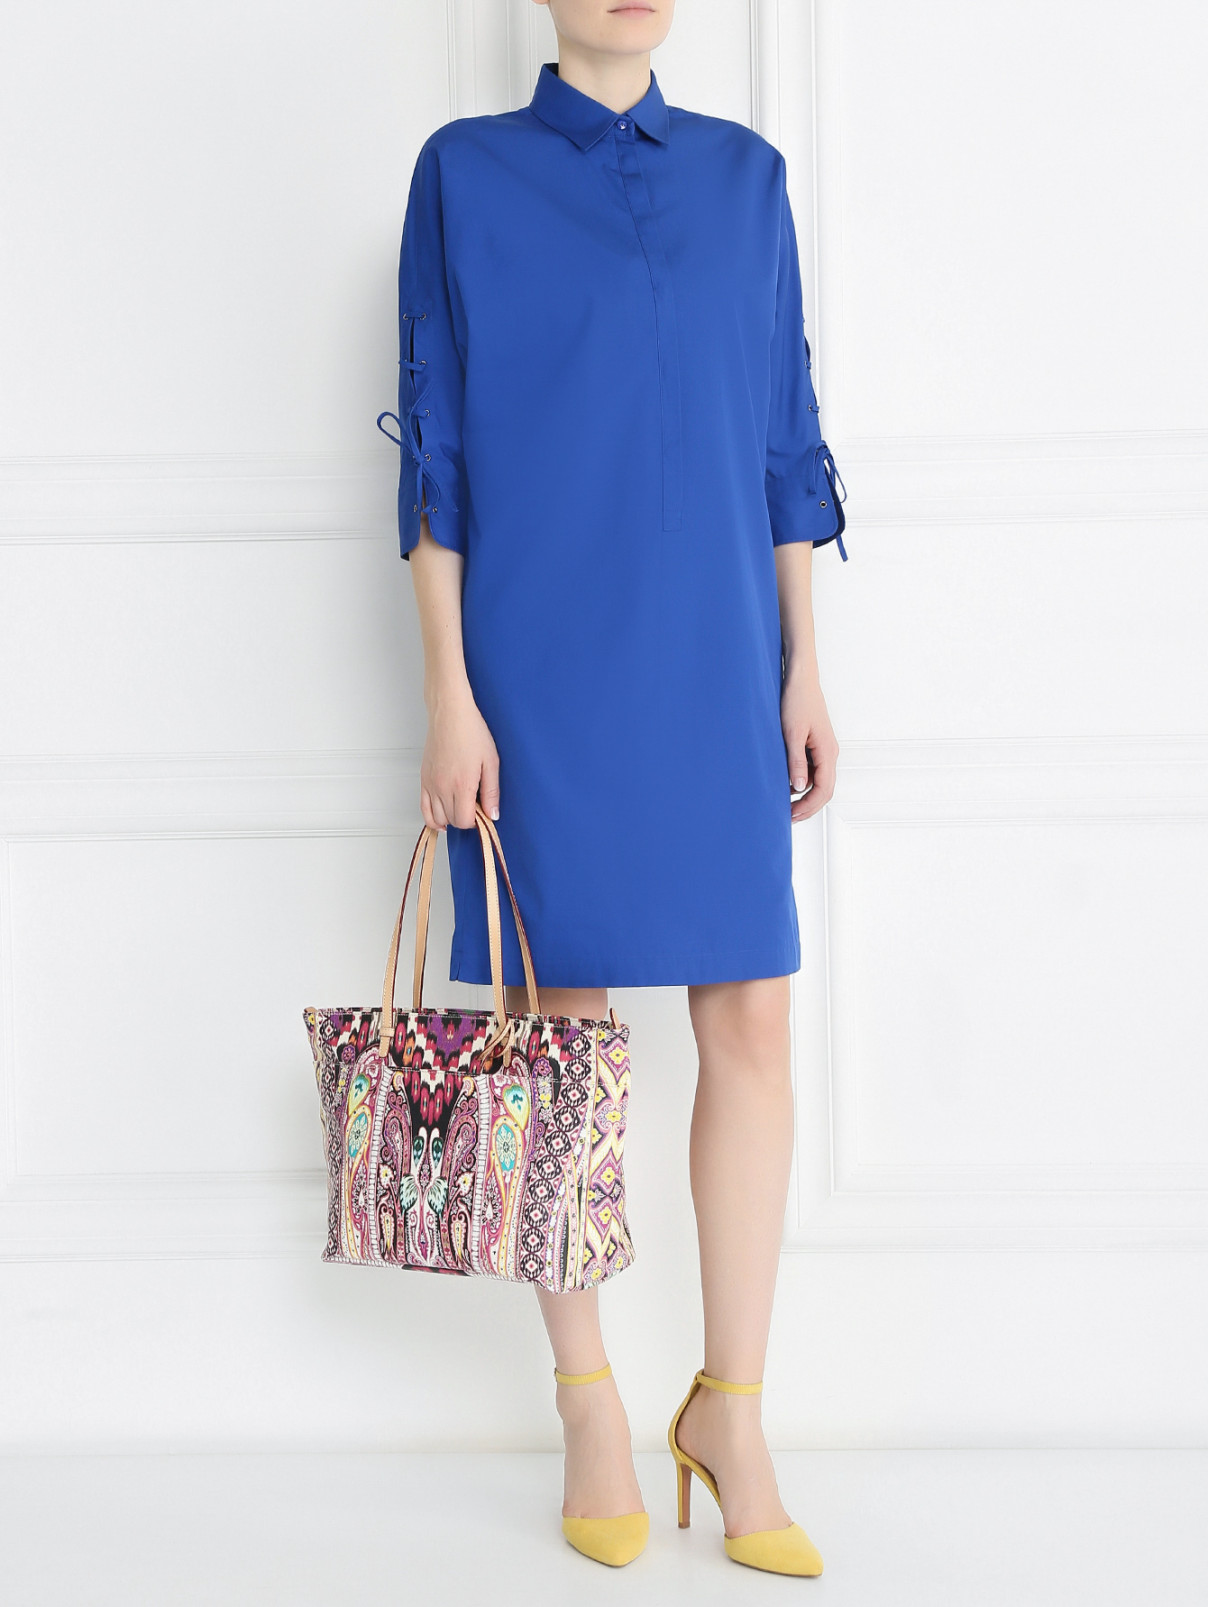 Платье из хлопка с декоративной шнуровкой на рукавах Max Mara  –  Модель Общий вид  – Цвет:  Синий